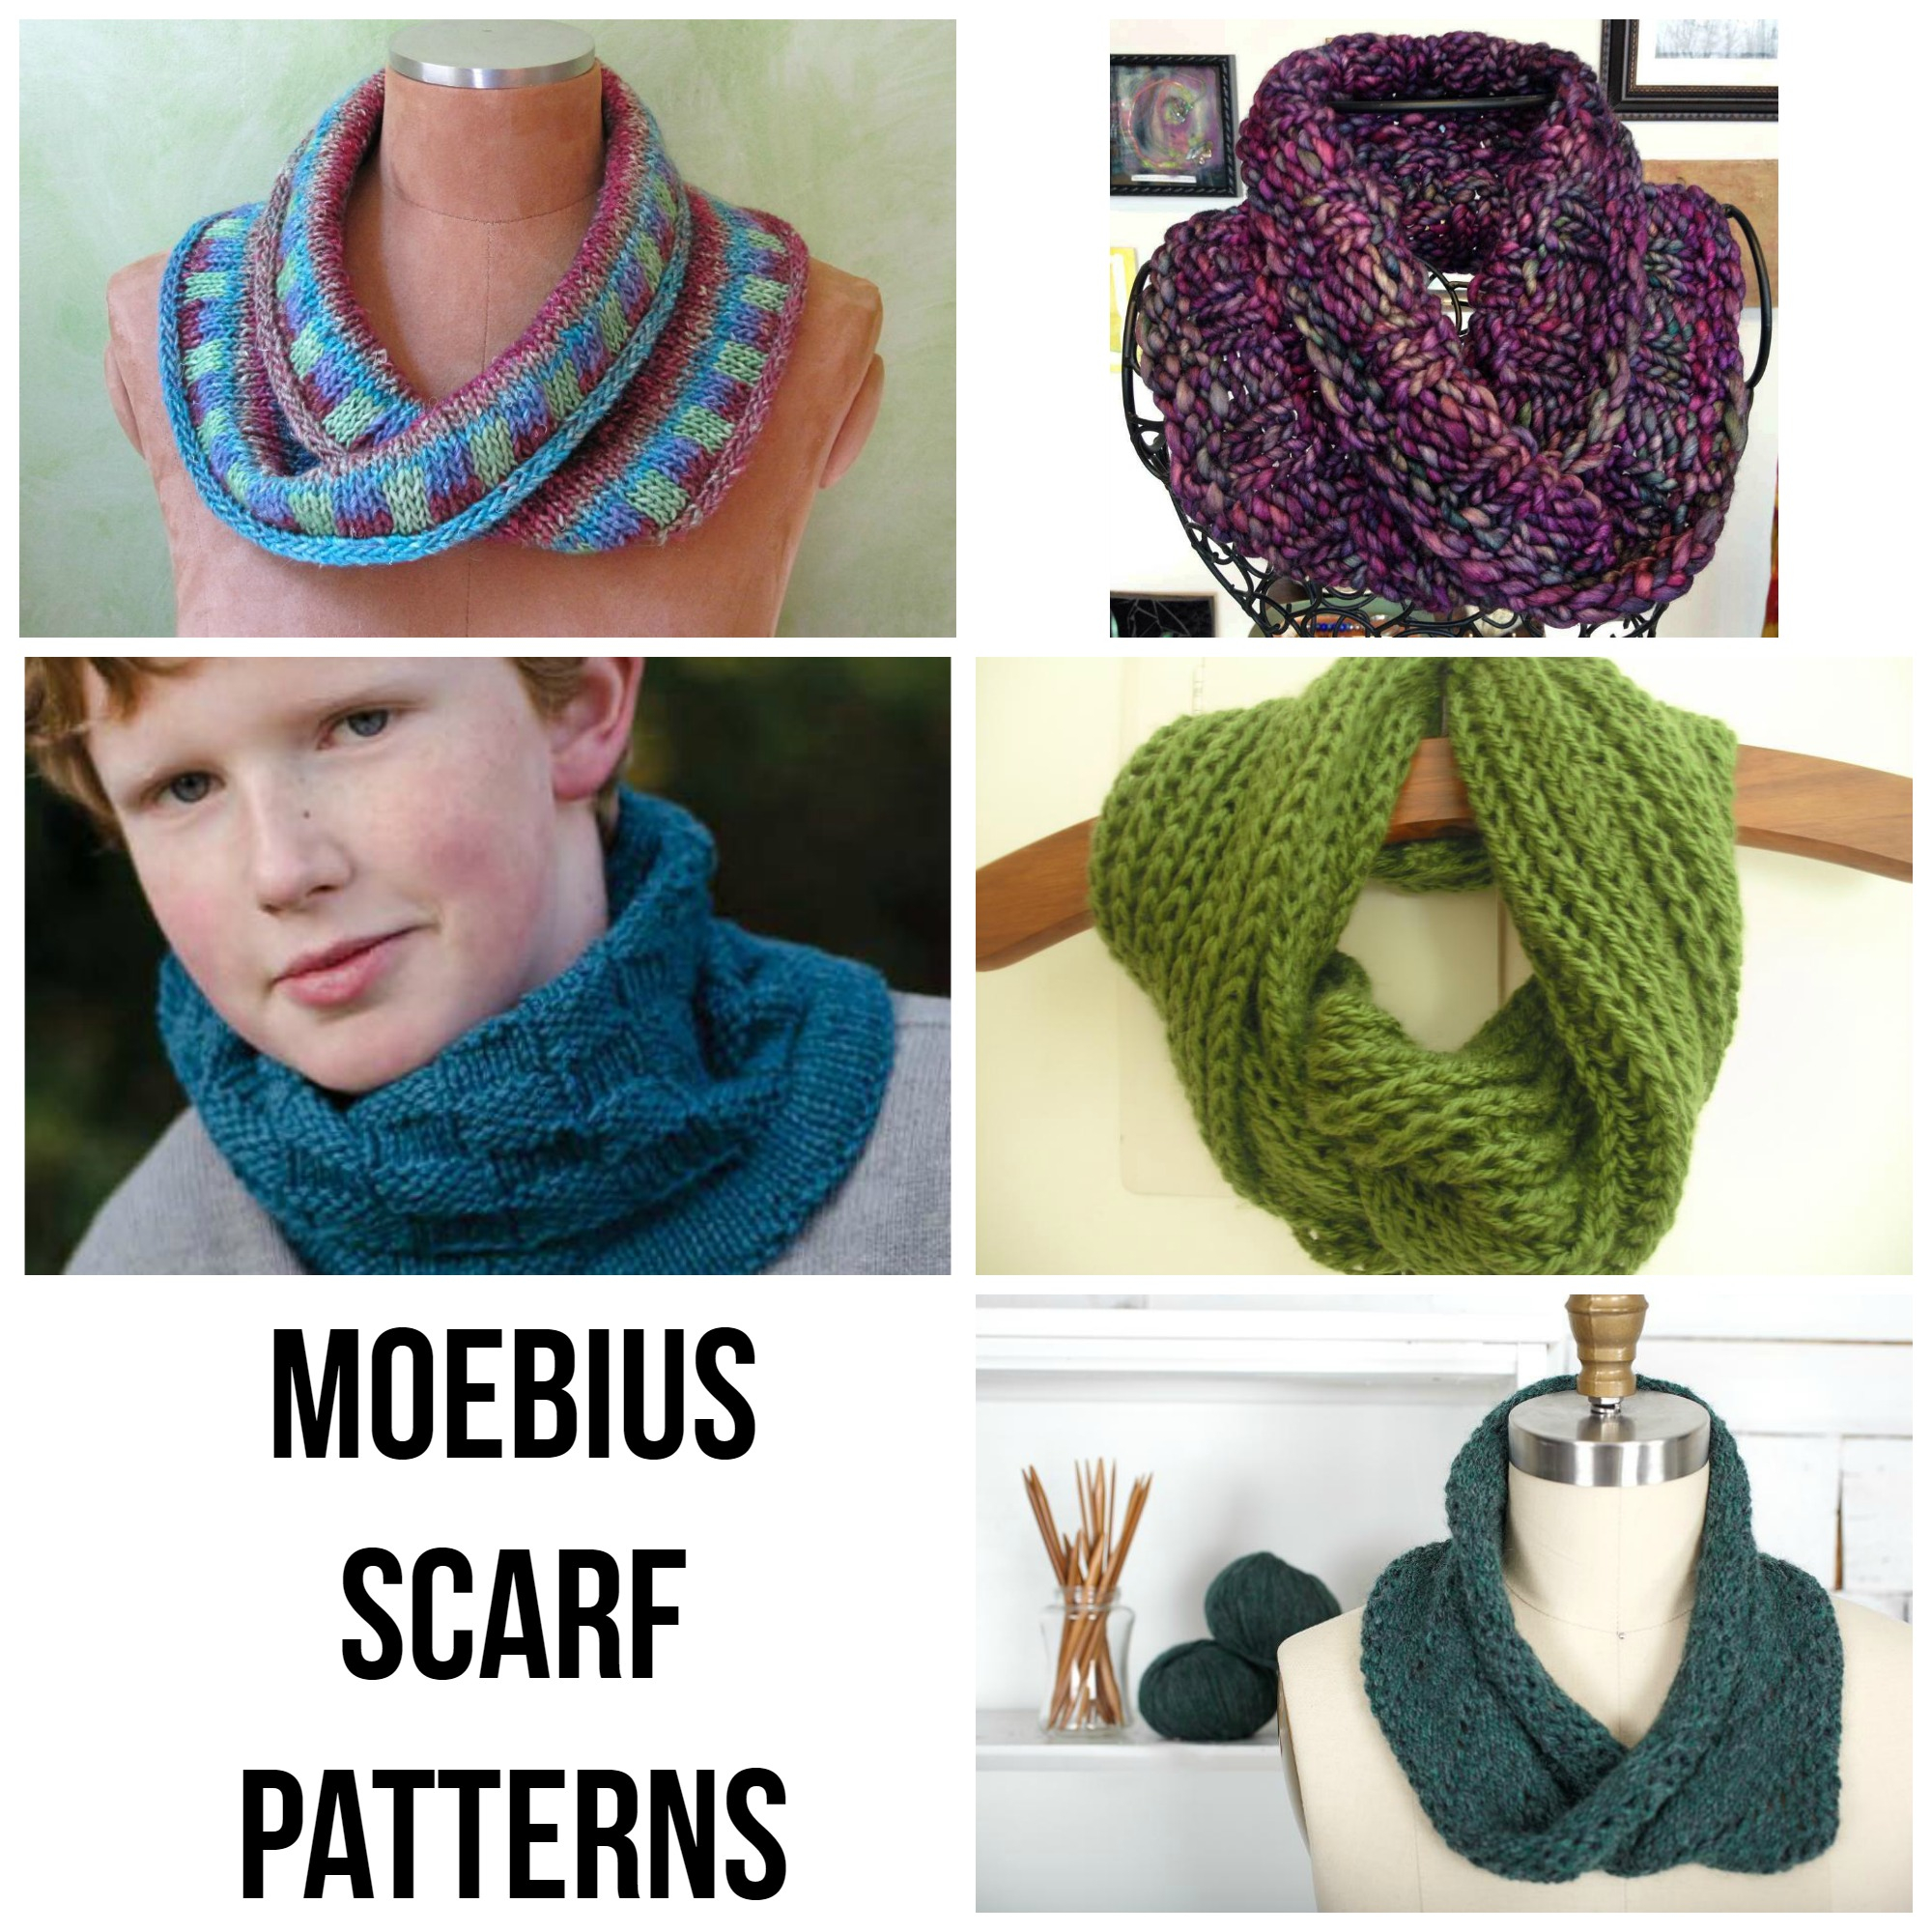 Free Mobius Scarf Knitting Pattern 10 Moebius Scarf Pattern Picks On Craftsy